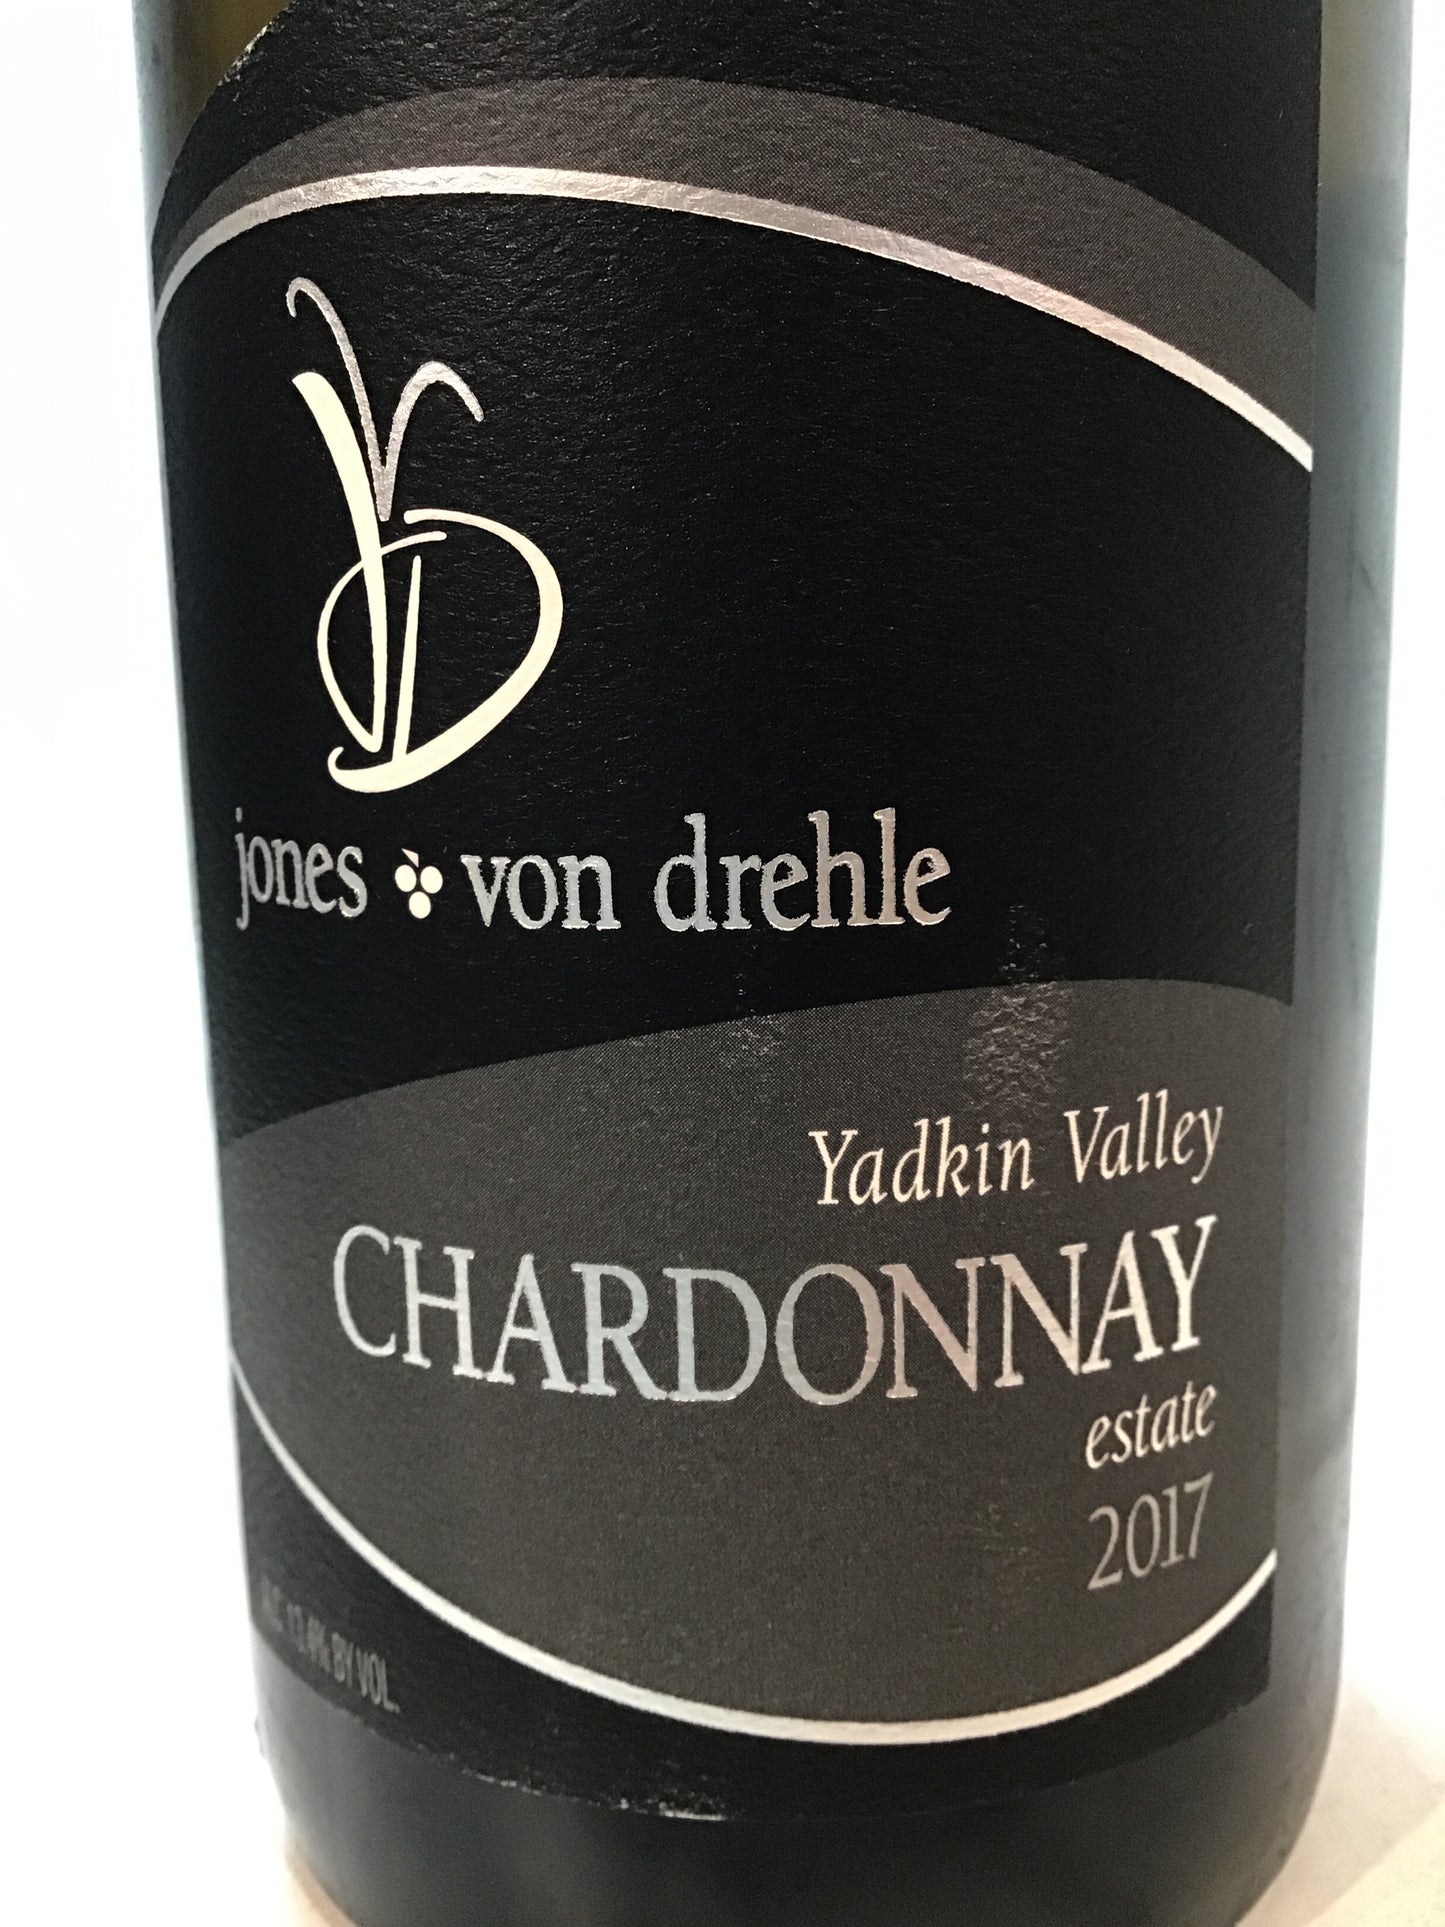 Jones von Drehle - Steel Chardonnay - Yadkin Valley